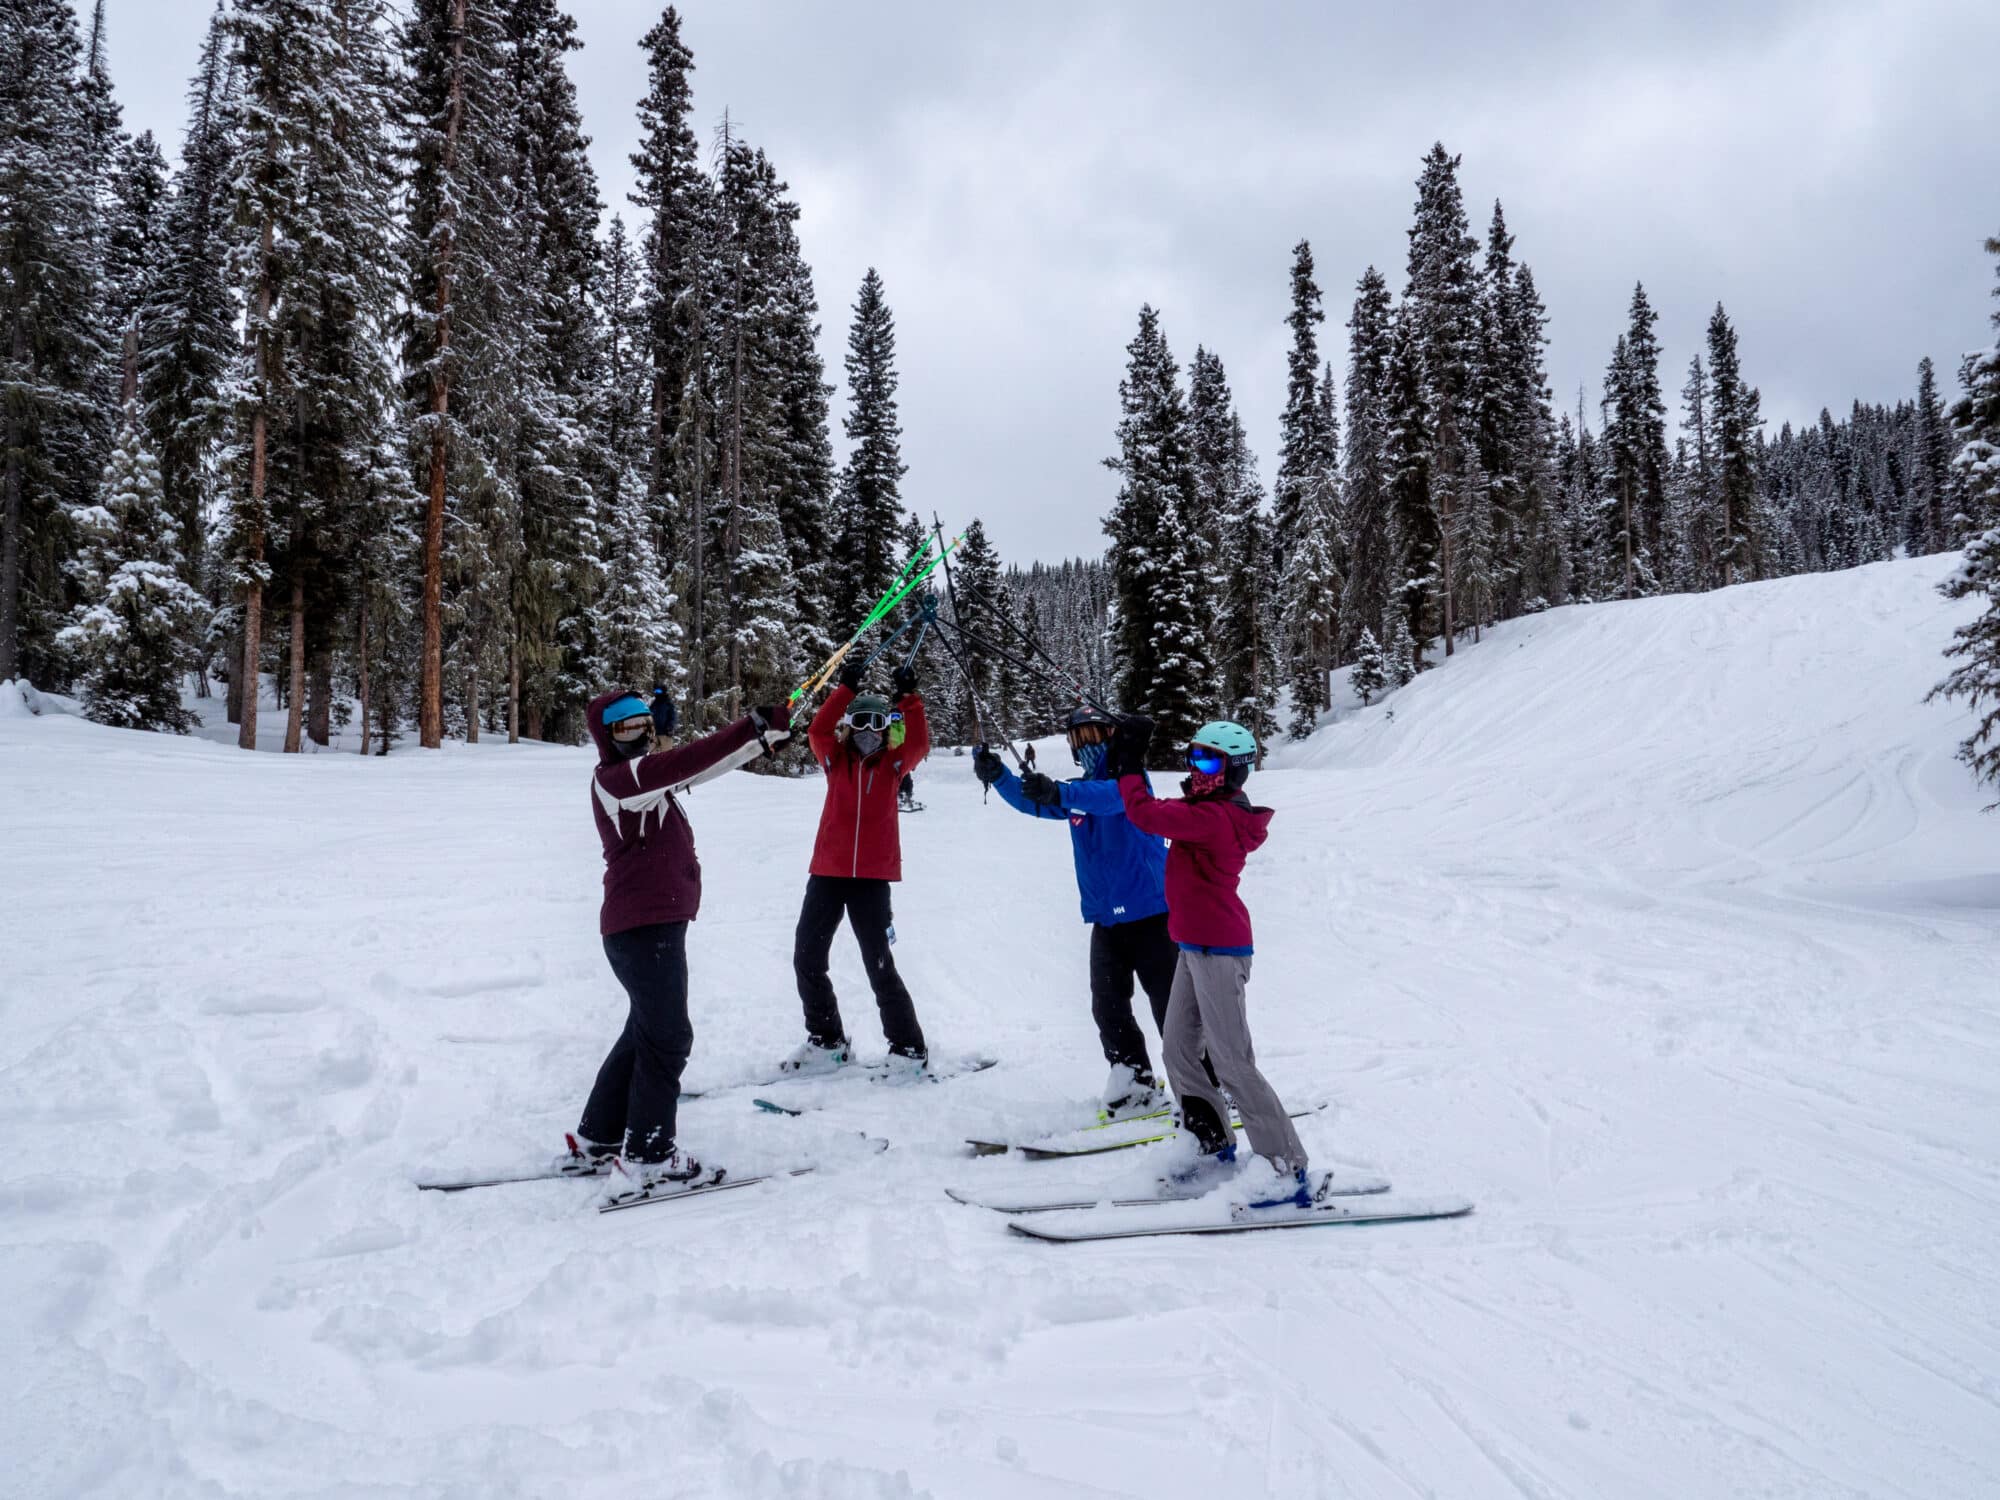 Women's ski clinic celebrates a great powder day on the mountain